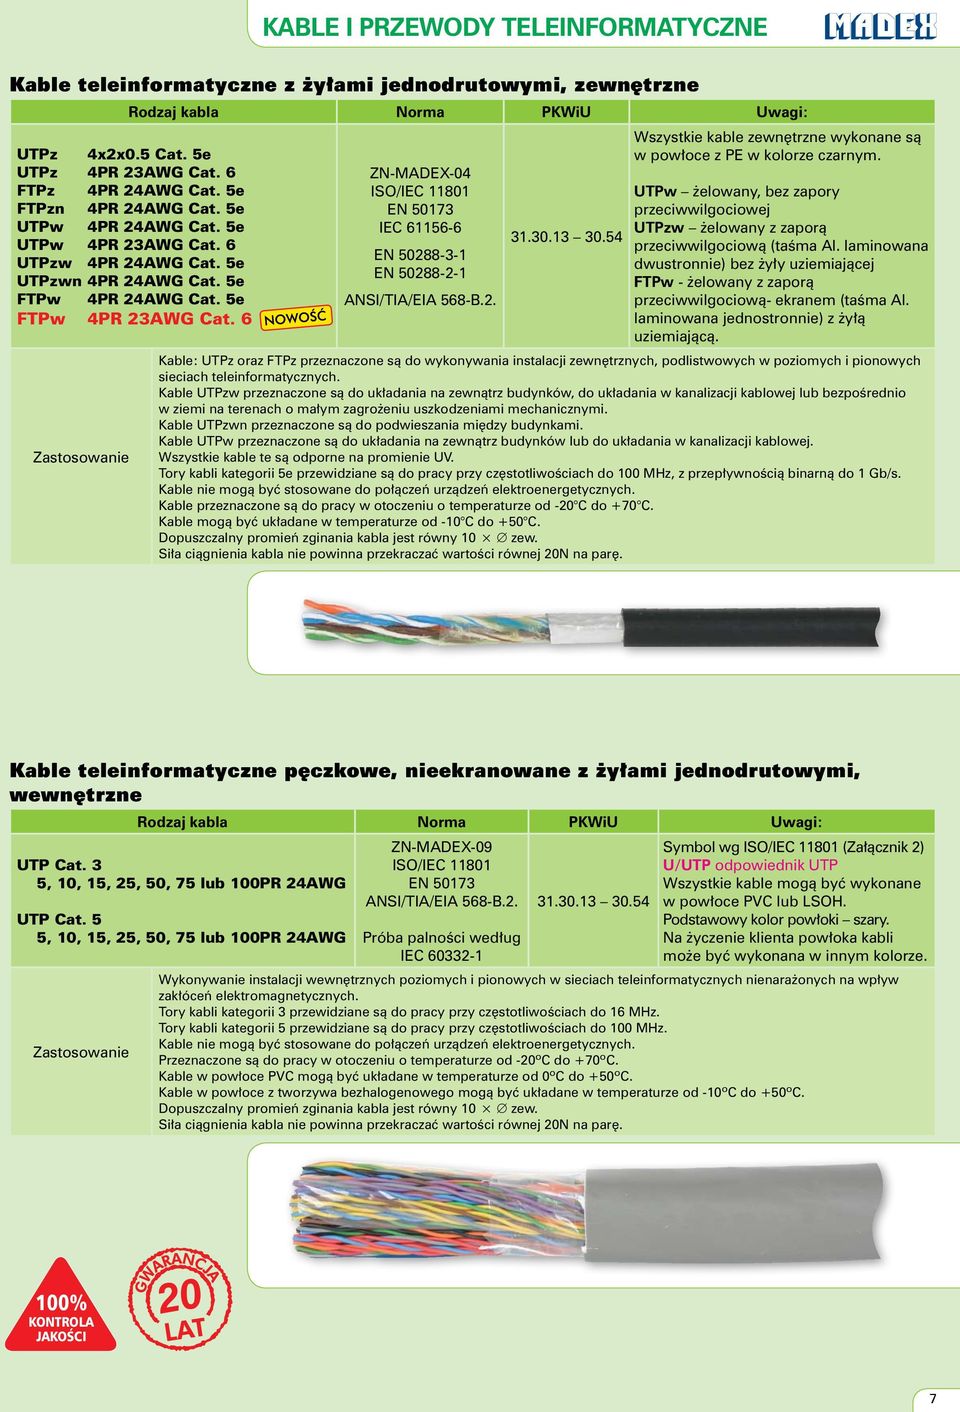 6 ZN-MADEX-04 ISO/IEC 11801 EN 50173 IEC 61156-6 EN 50288-3-1 EN 50288-2-1 ANSI/TIA/EIA 568-B.2. 31.30.13 30.54 Wszystkie kable zewn trzne wykonane sà w pow oce z PE w kolorze czarnym.